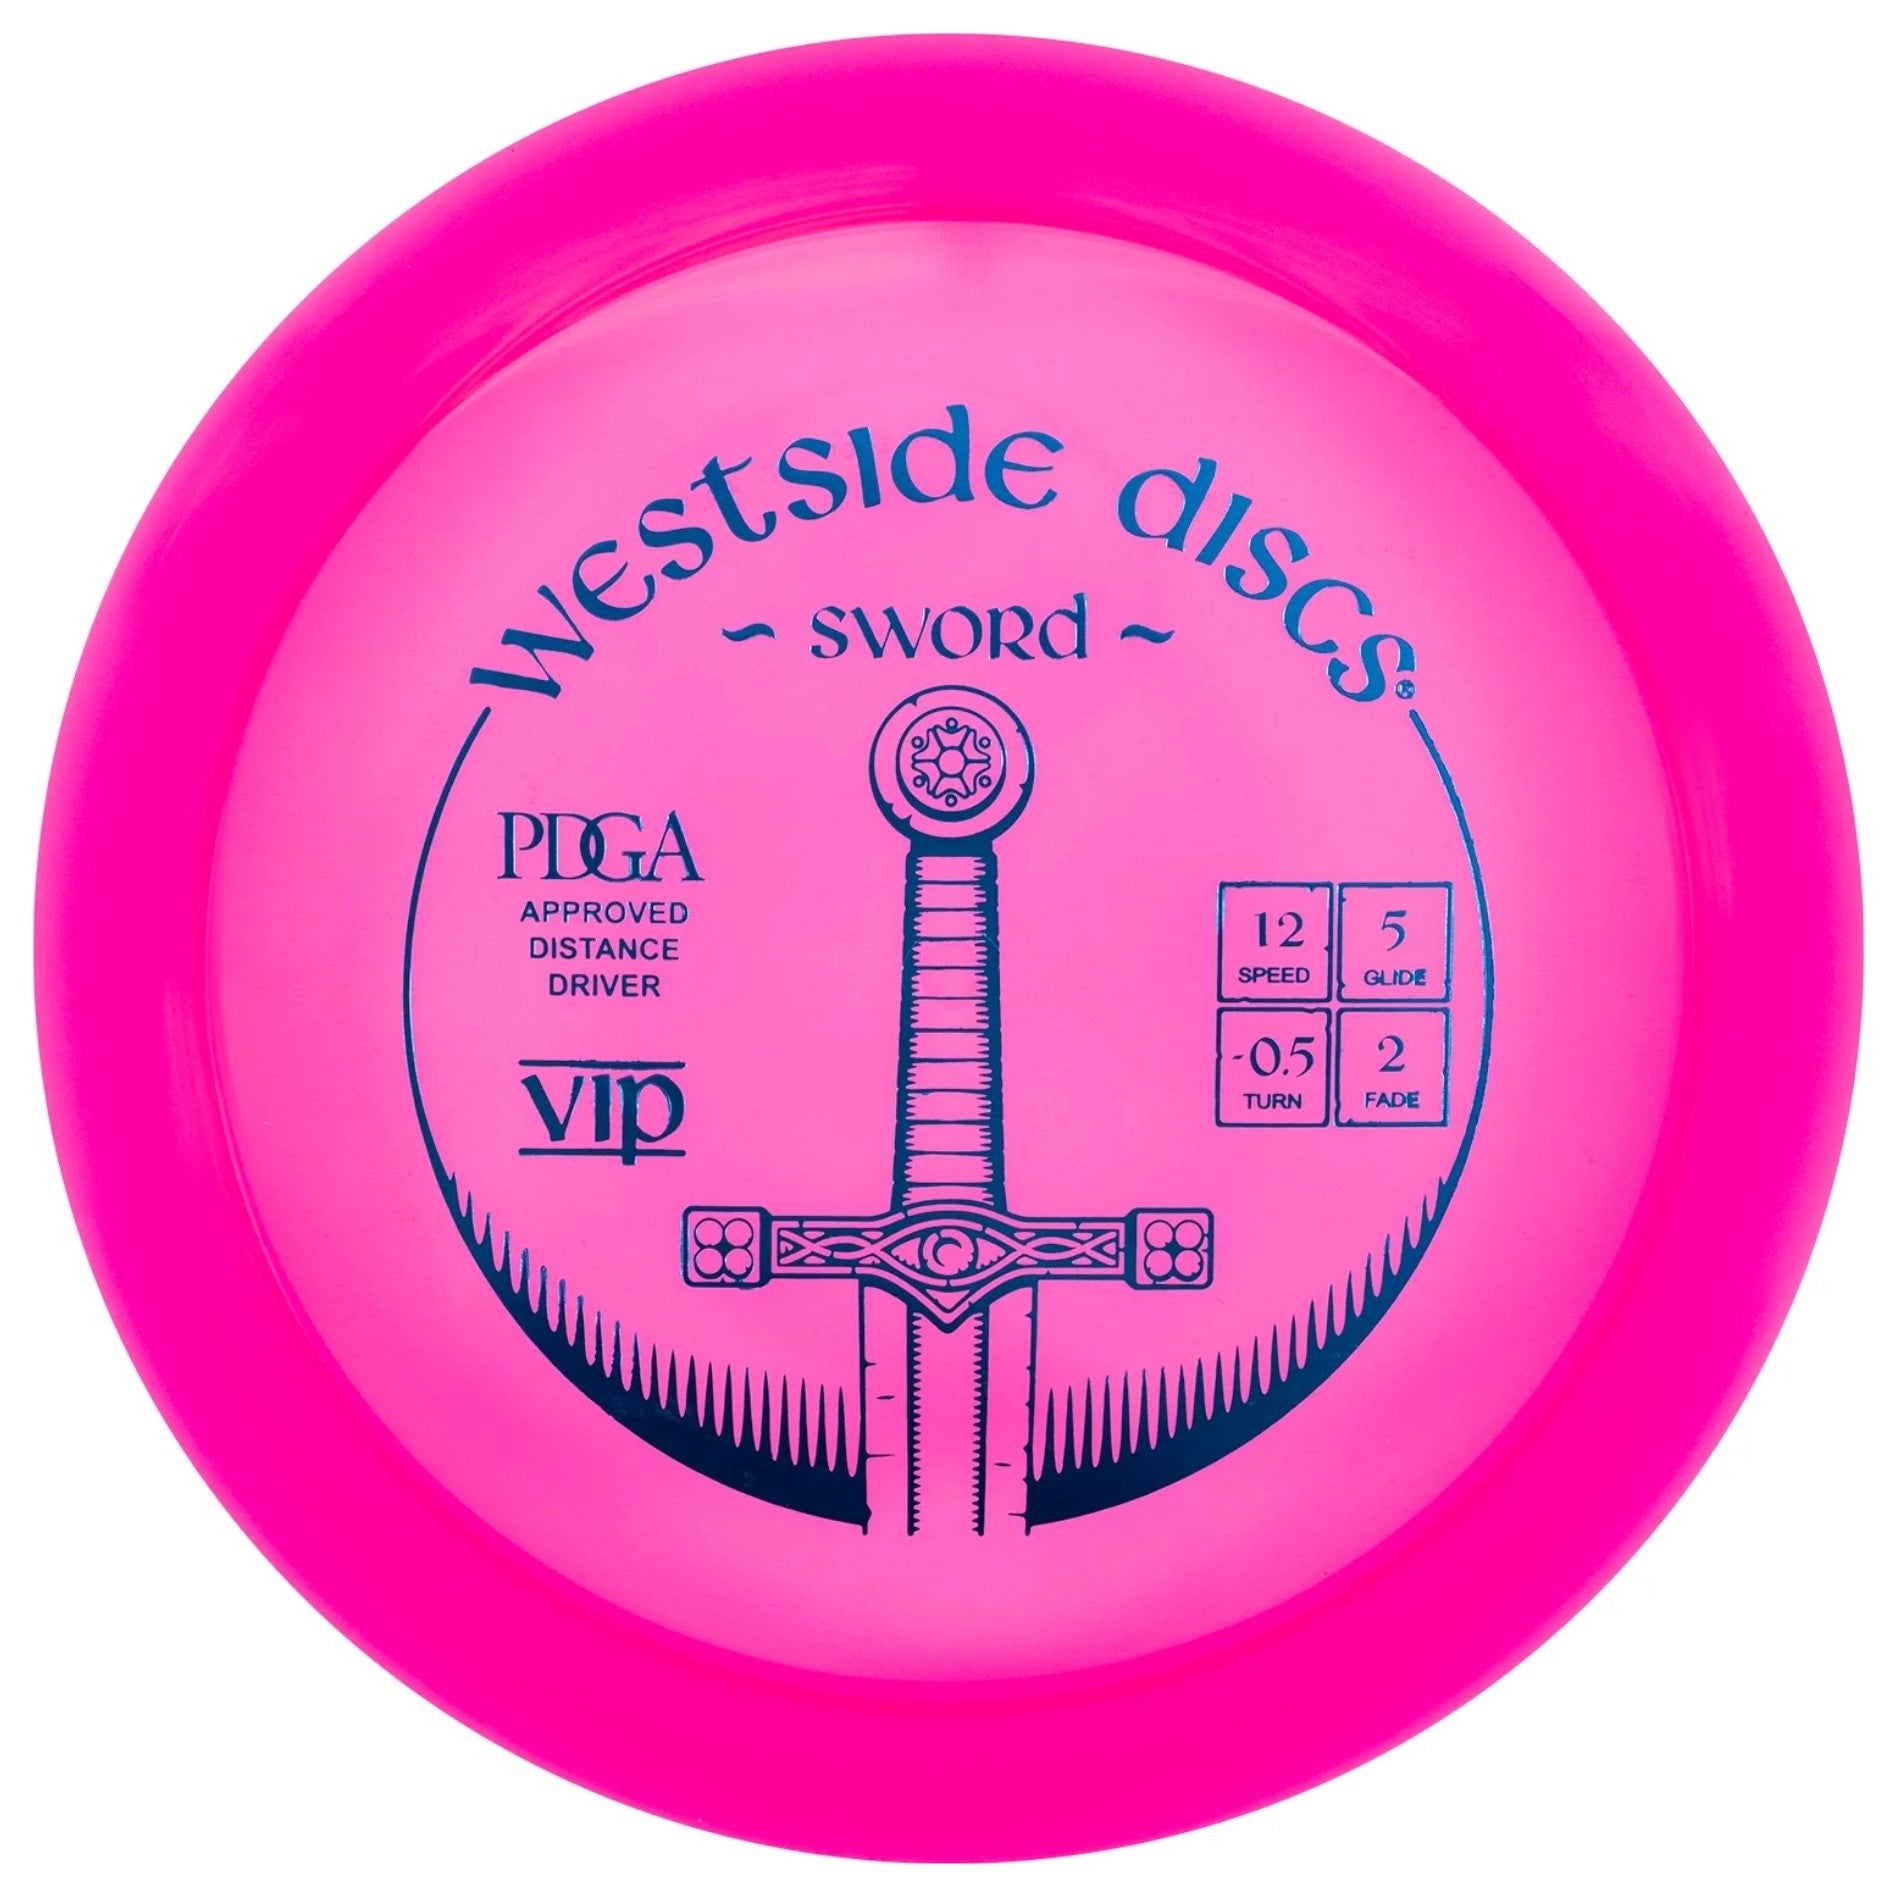 Westside Sword